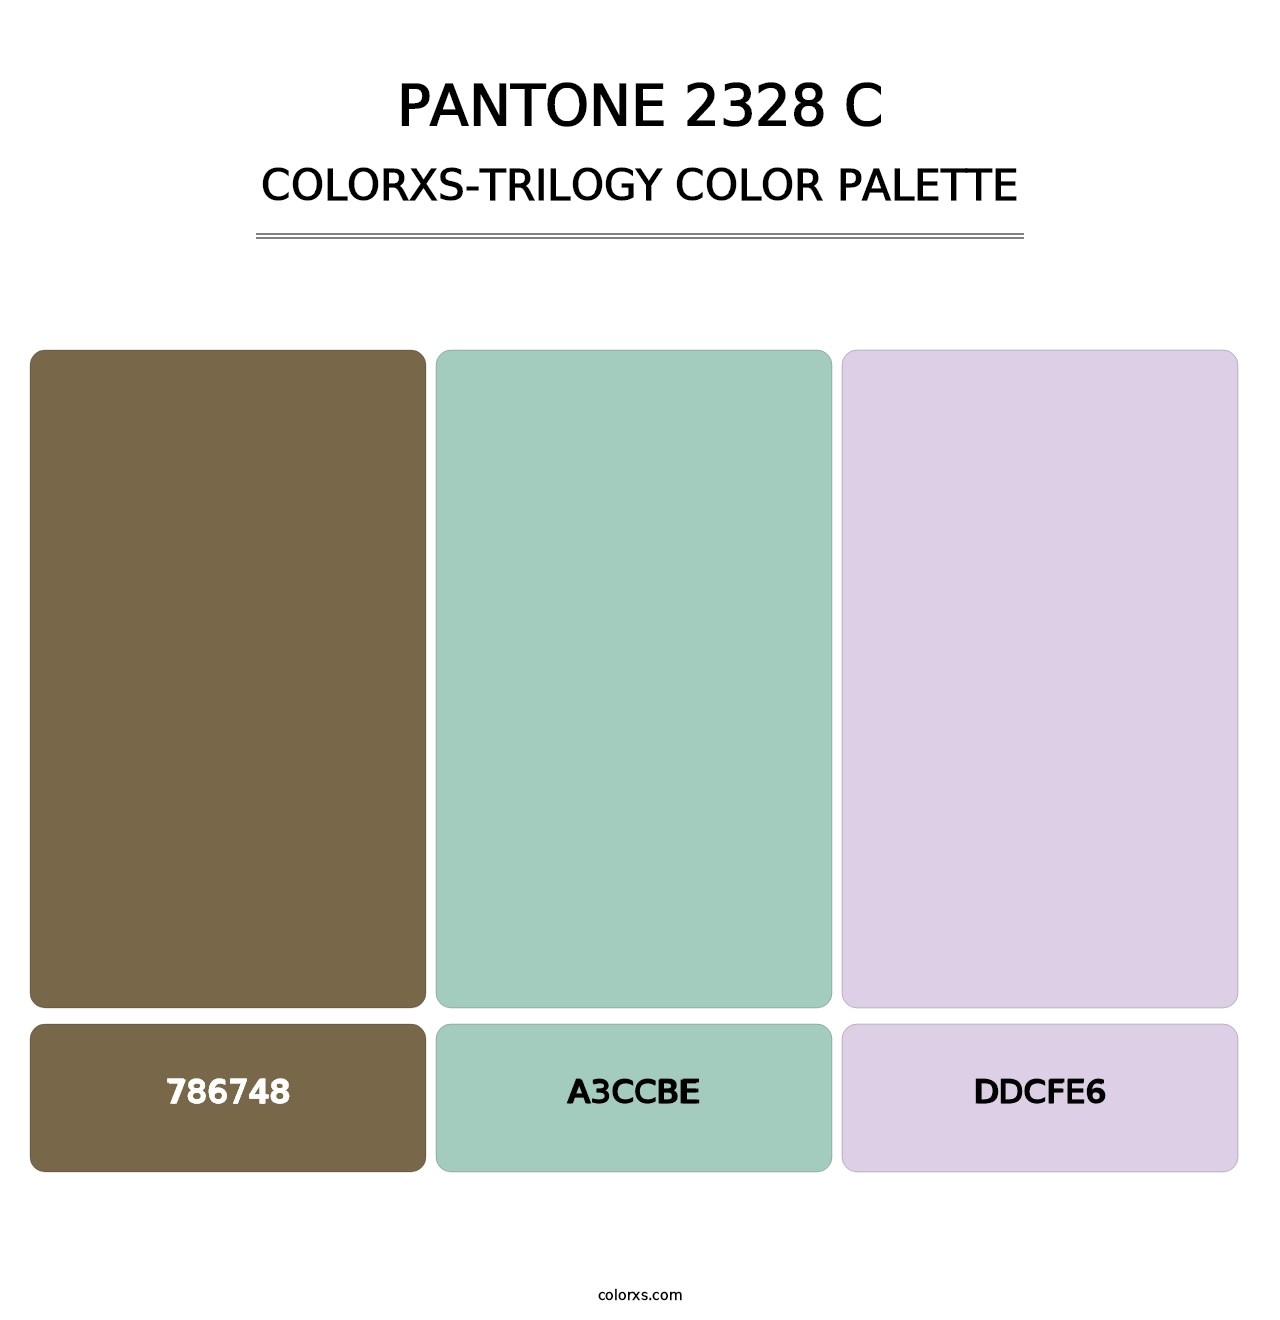 PANTONE 2328 C - Colorxs Trilogy Palette